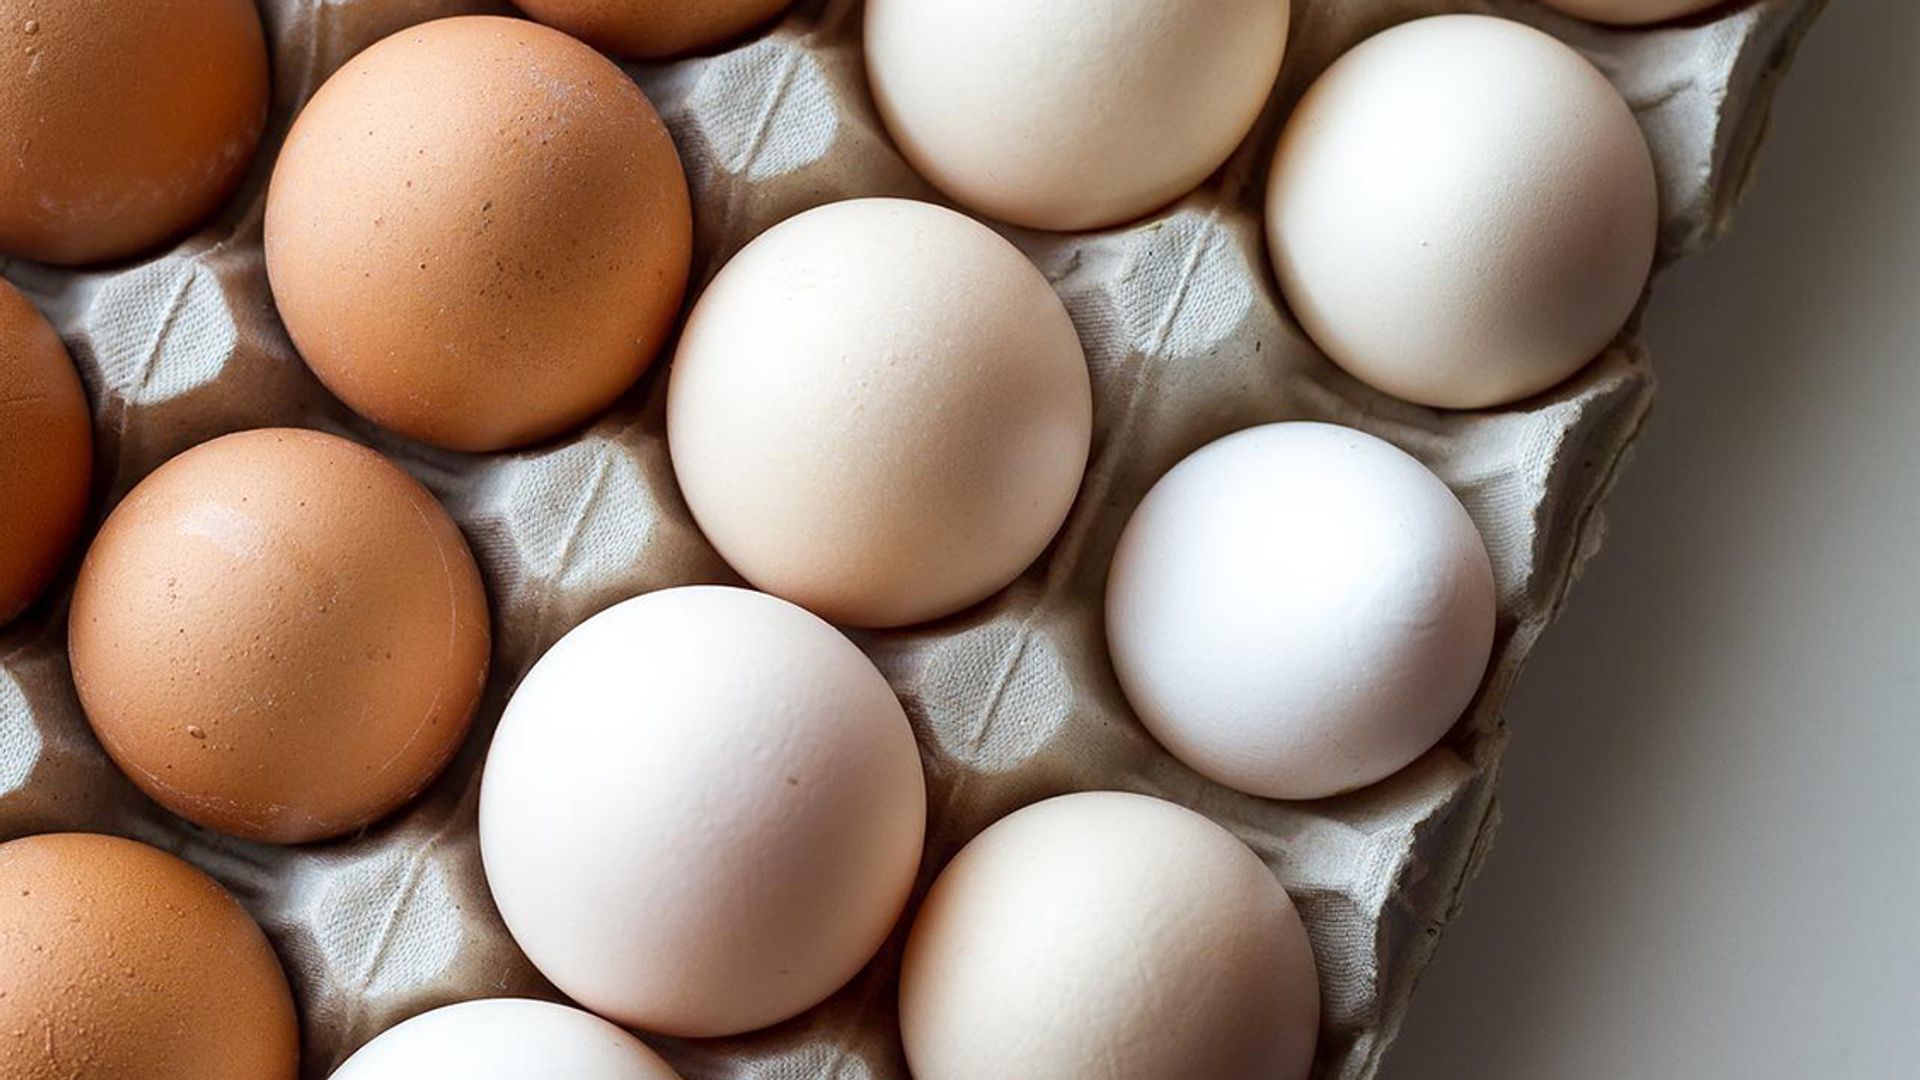 Nominaal gedragen Overgave Witte en bruine eieren: wat zijn de verschillen en wat is gezonder? - Kassa  - BNNVARA